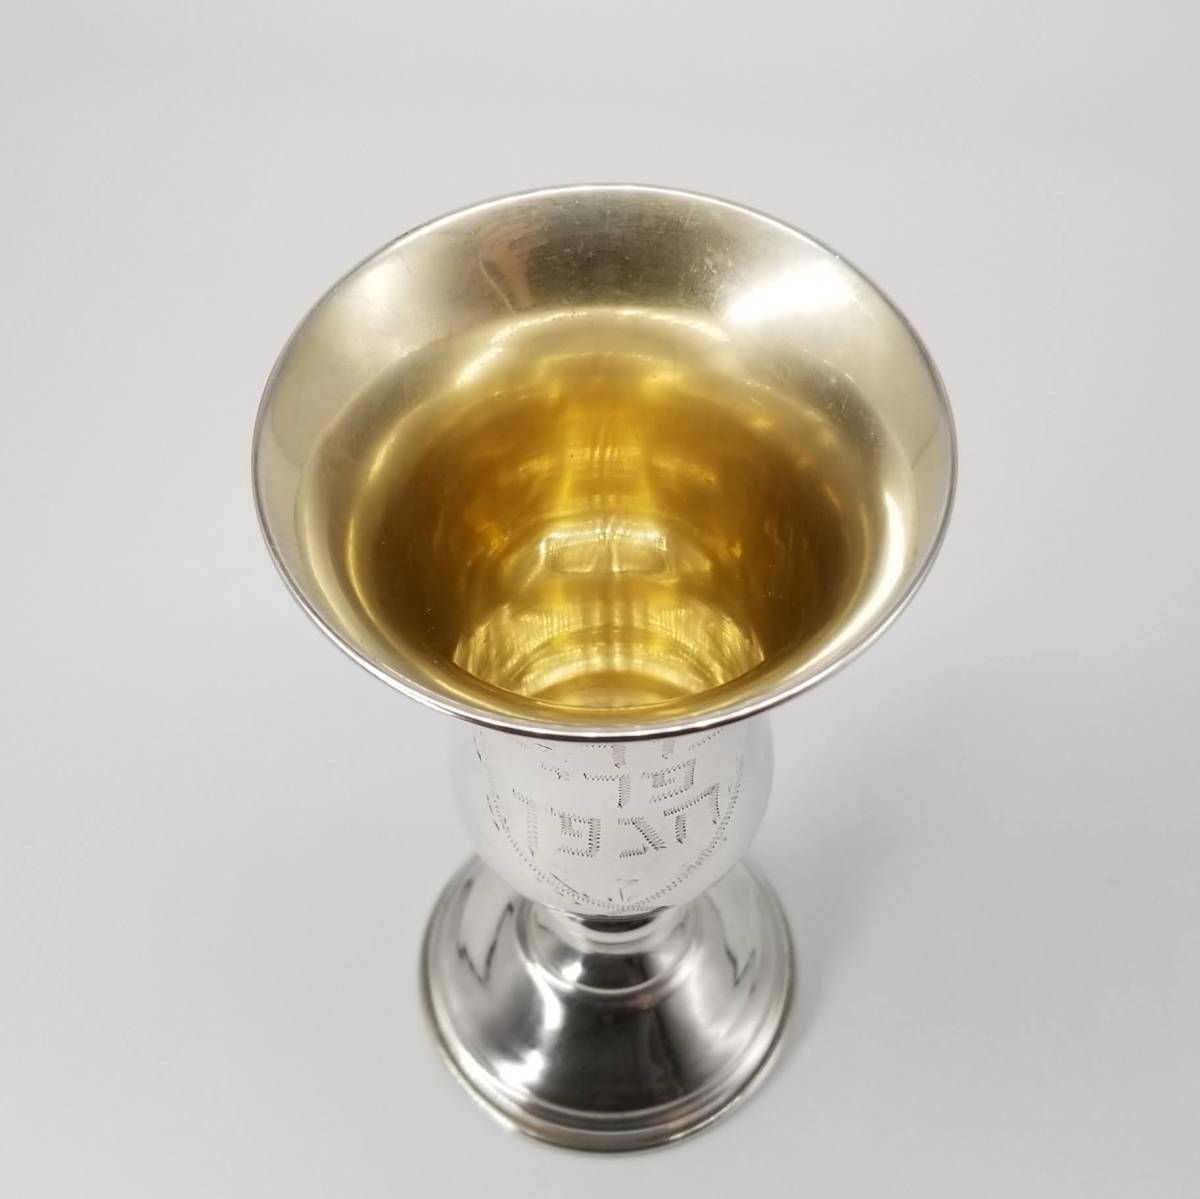 meki олень n sterling серебряный Mexico Vintage cup Kido u-shu cup высокий стакан серебряный посуда для сакэ yudaya.